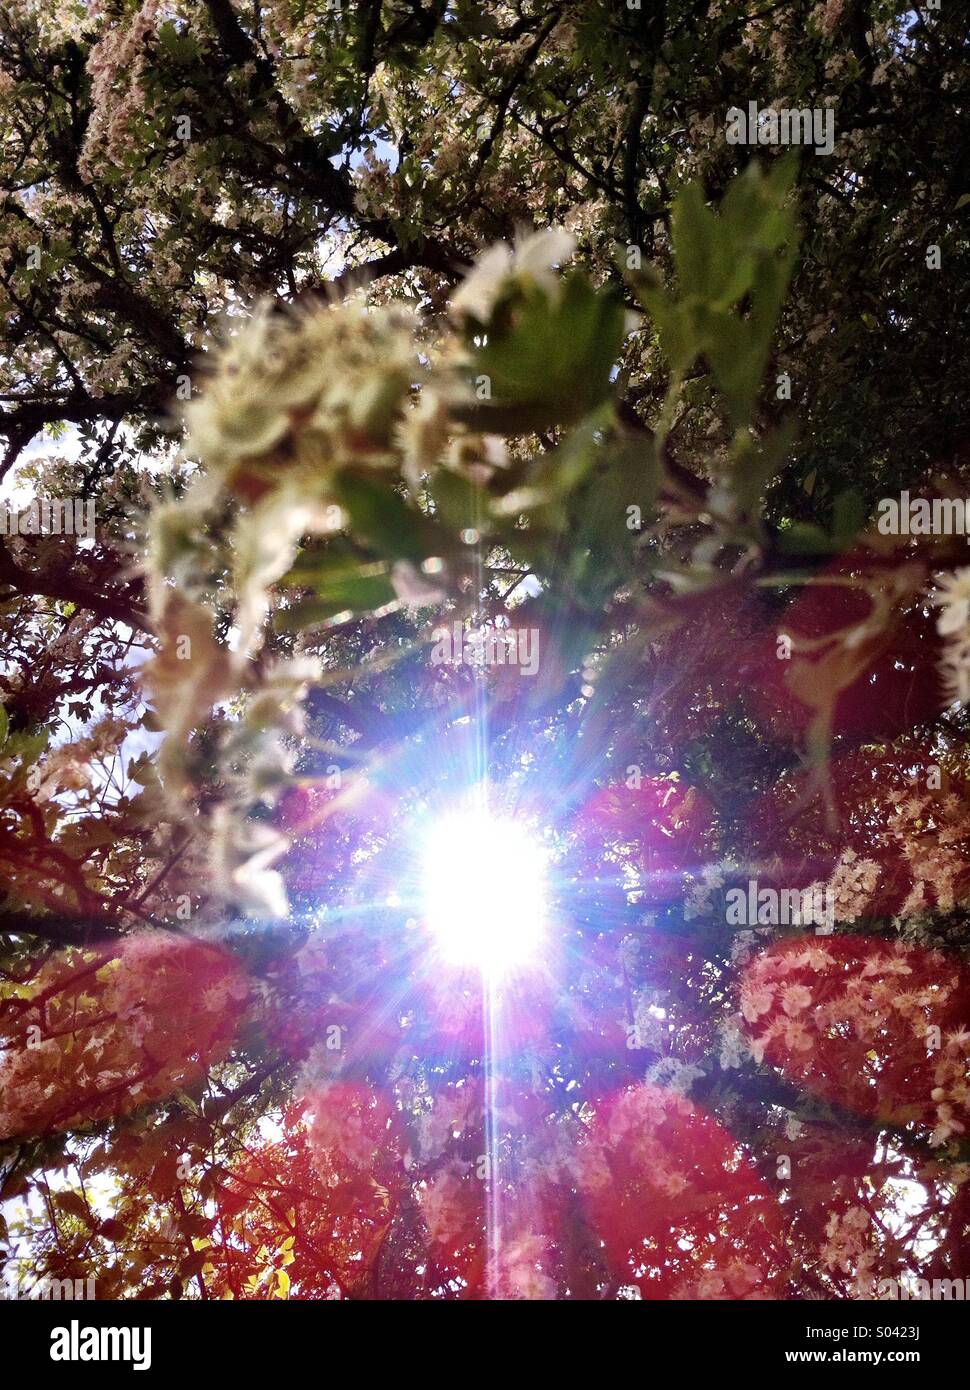 Sun light breaks through trees lighting up elderflower plants and trees Stock Photo